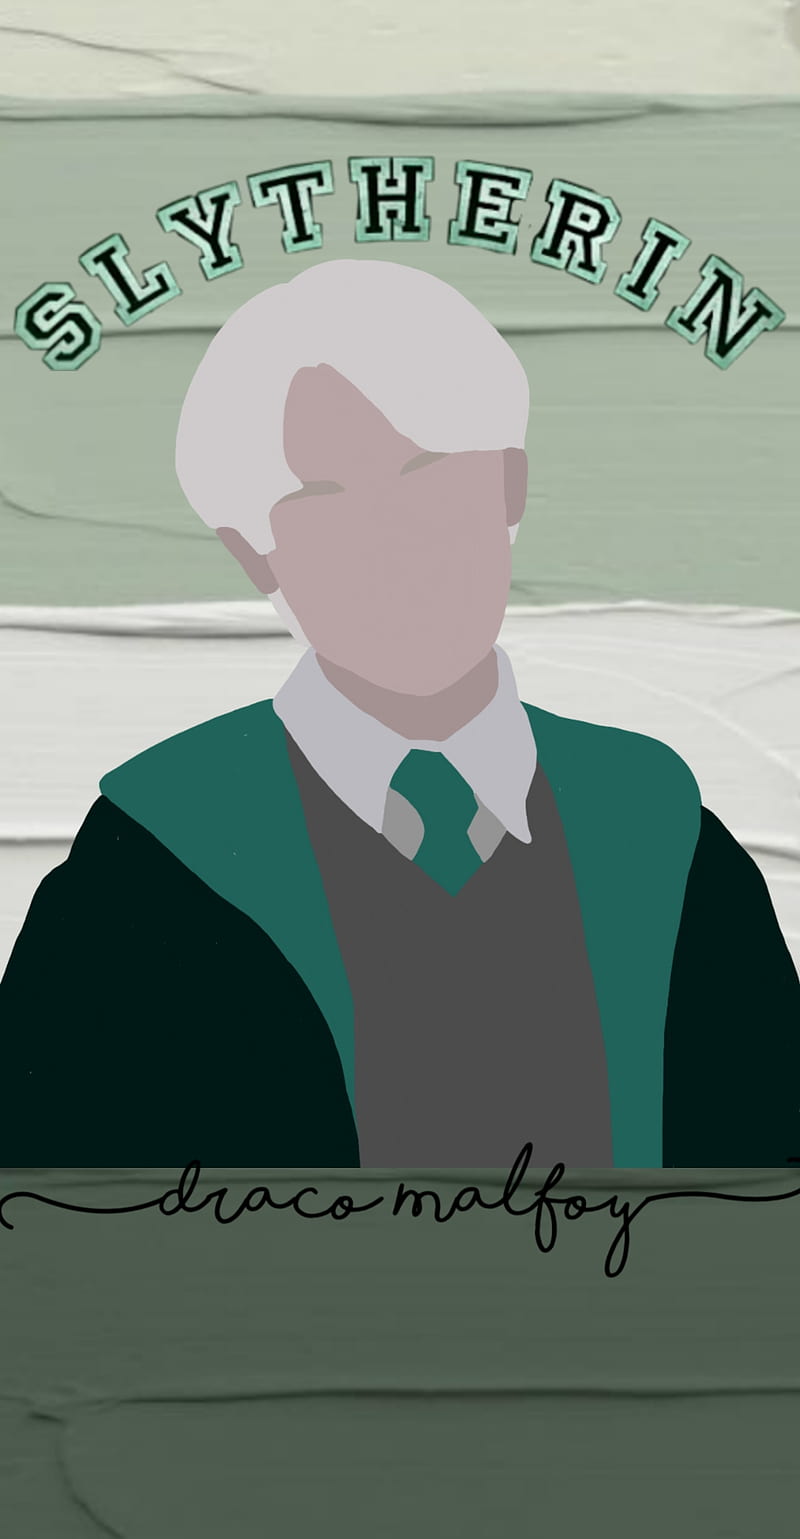 Draco Malfoy  Draco malfoy aesthetic, Draco malfoy, Draco malfoy hot